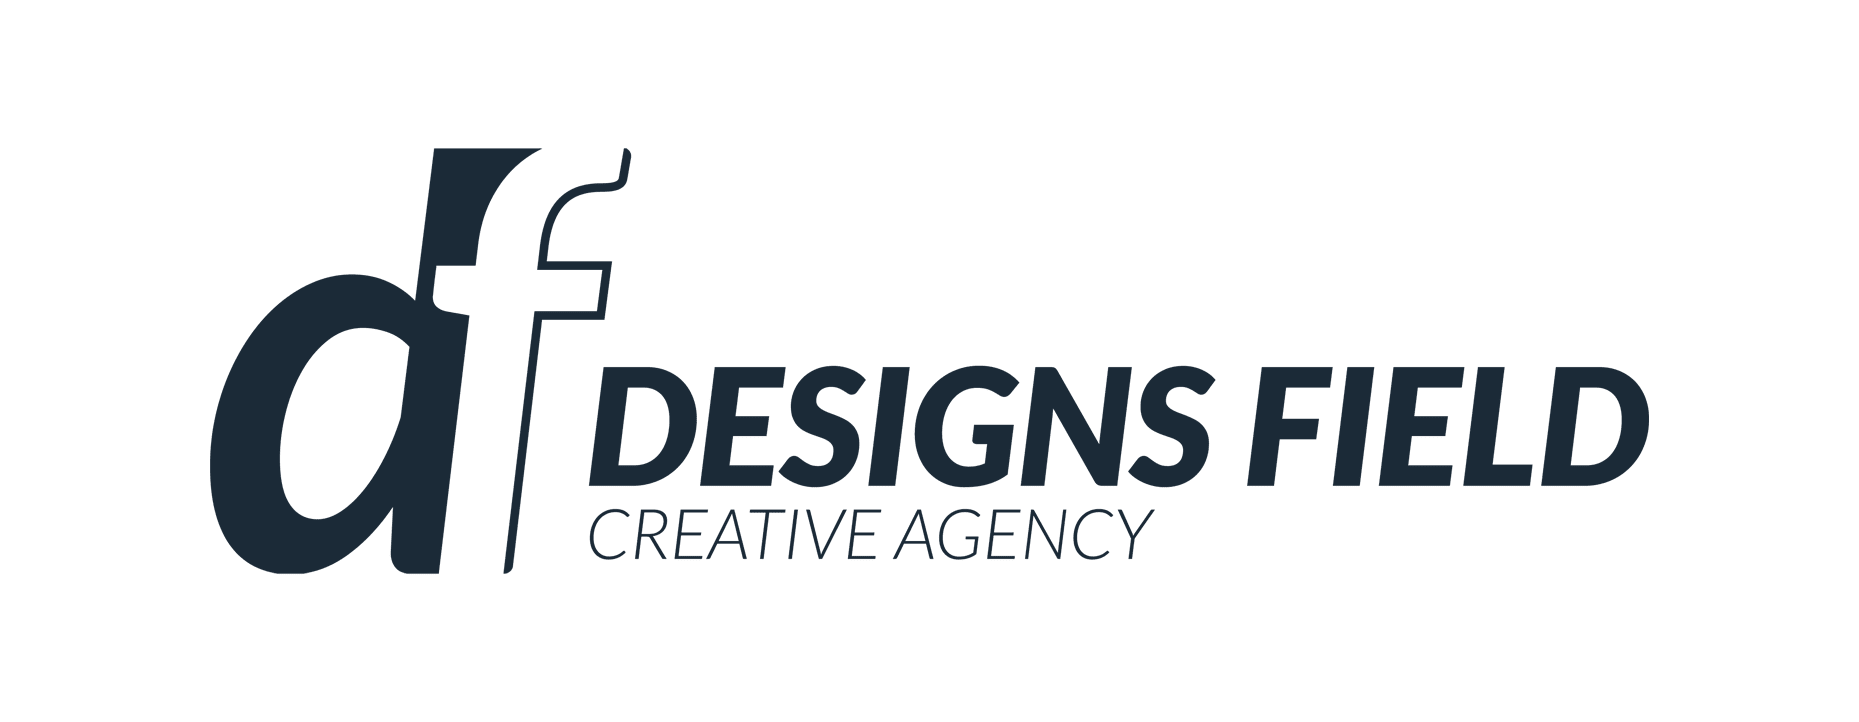 Designs Field Agency logo